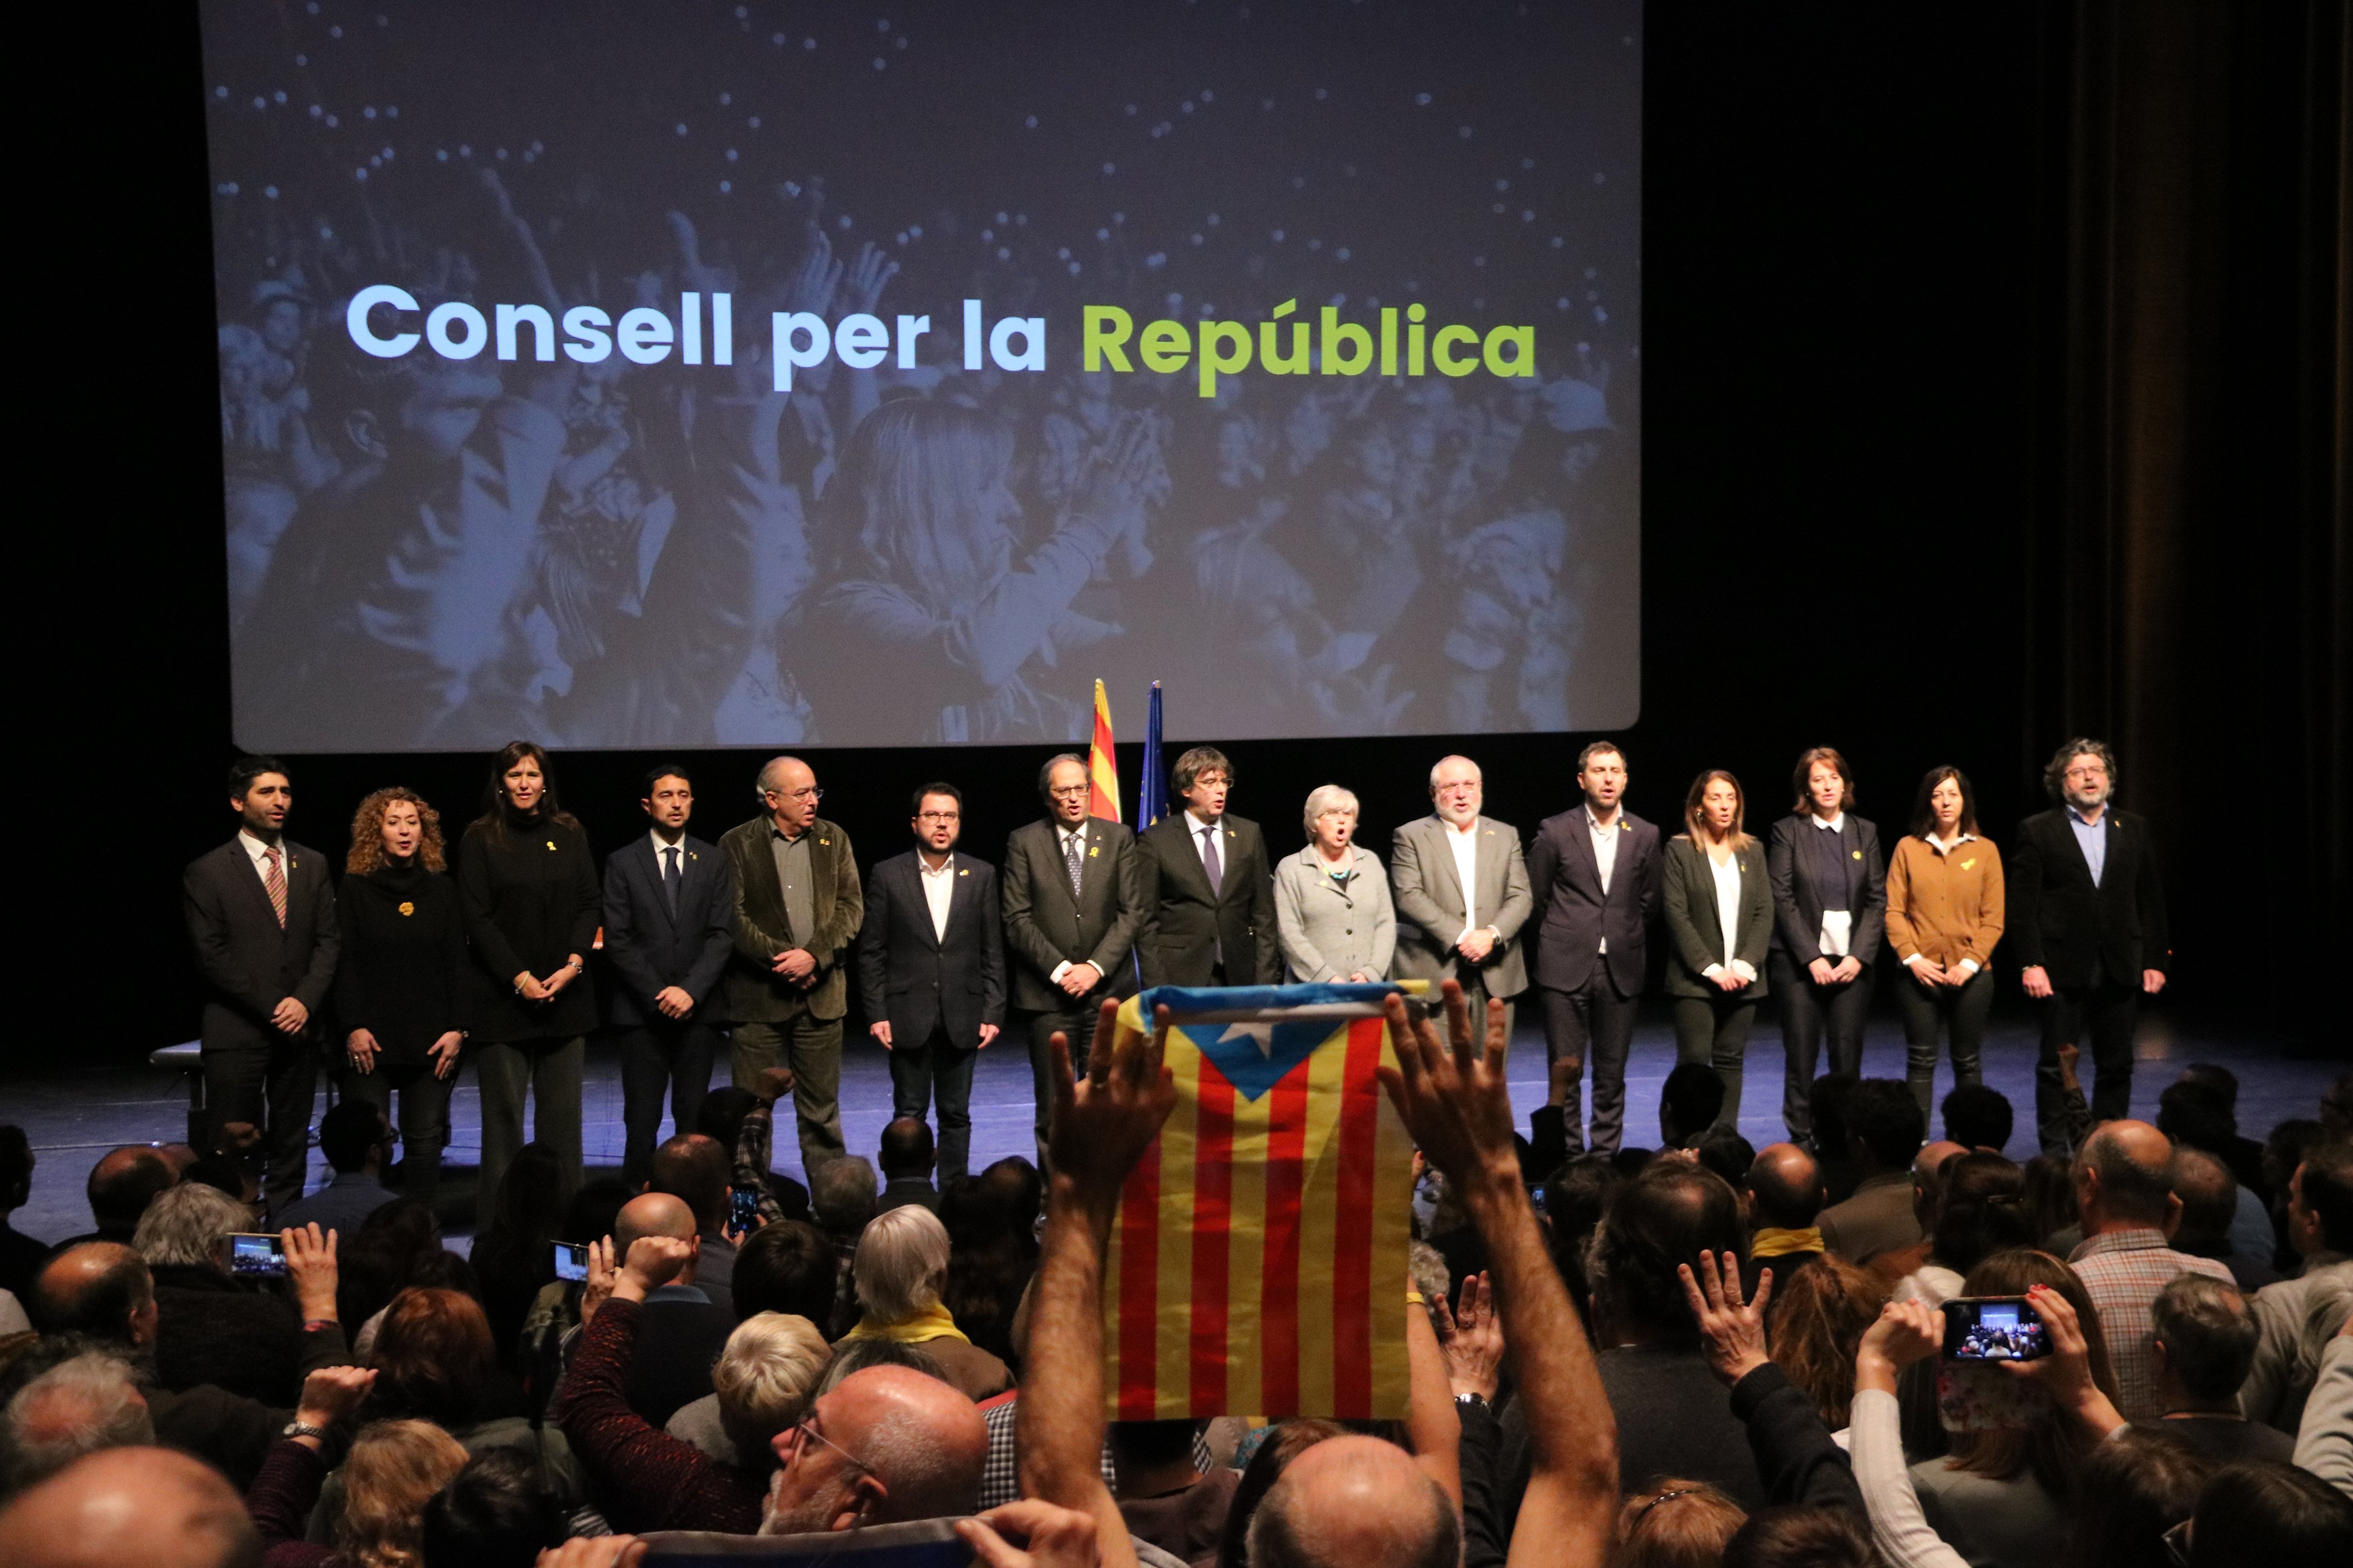 El Consell per la República convoca l'assemblea de representants el 31 d'octubre